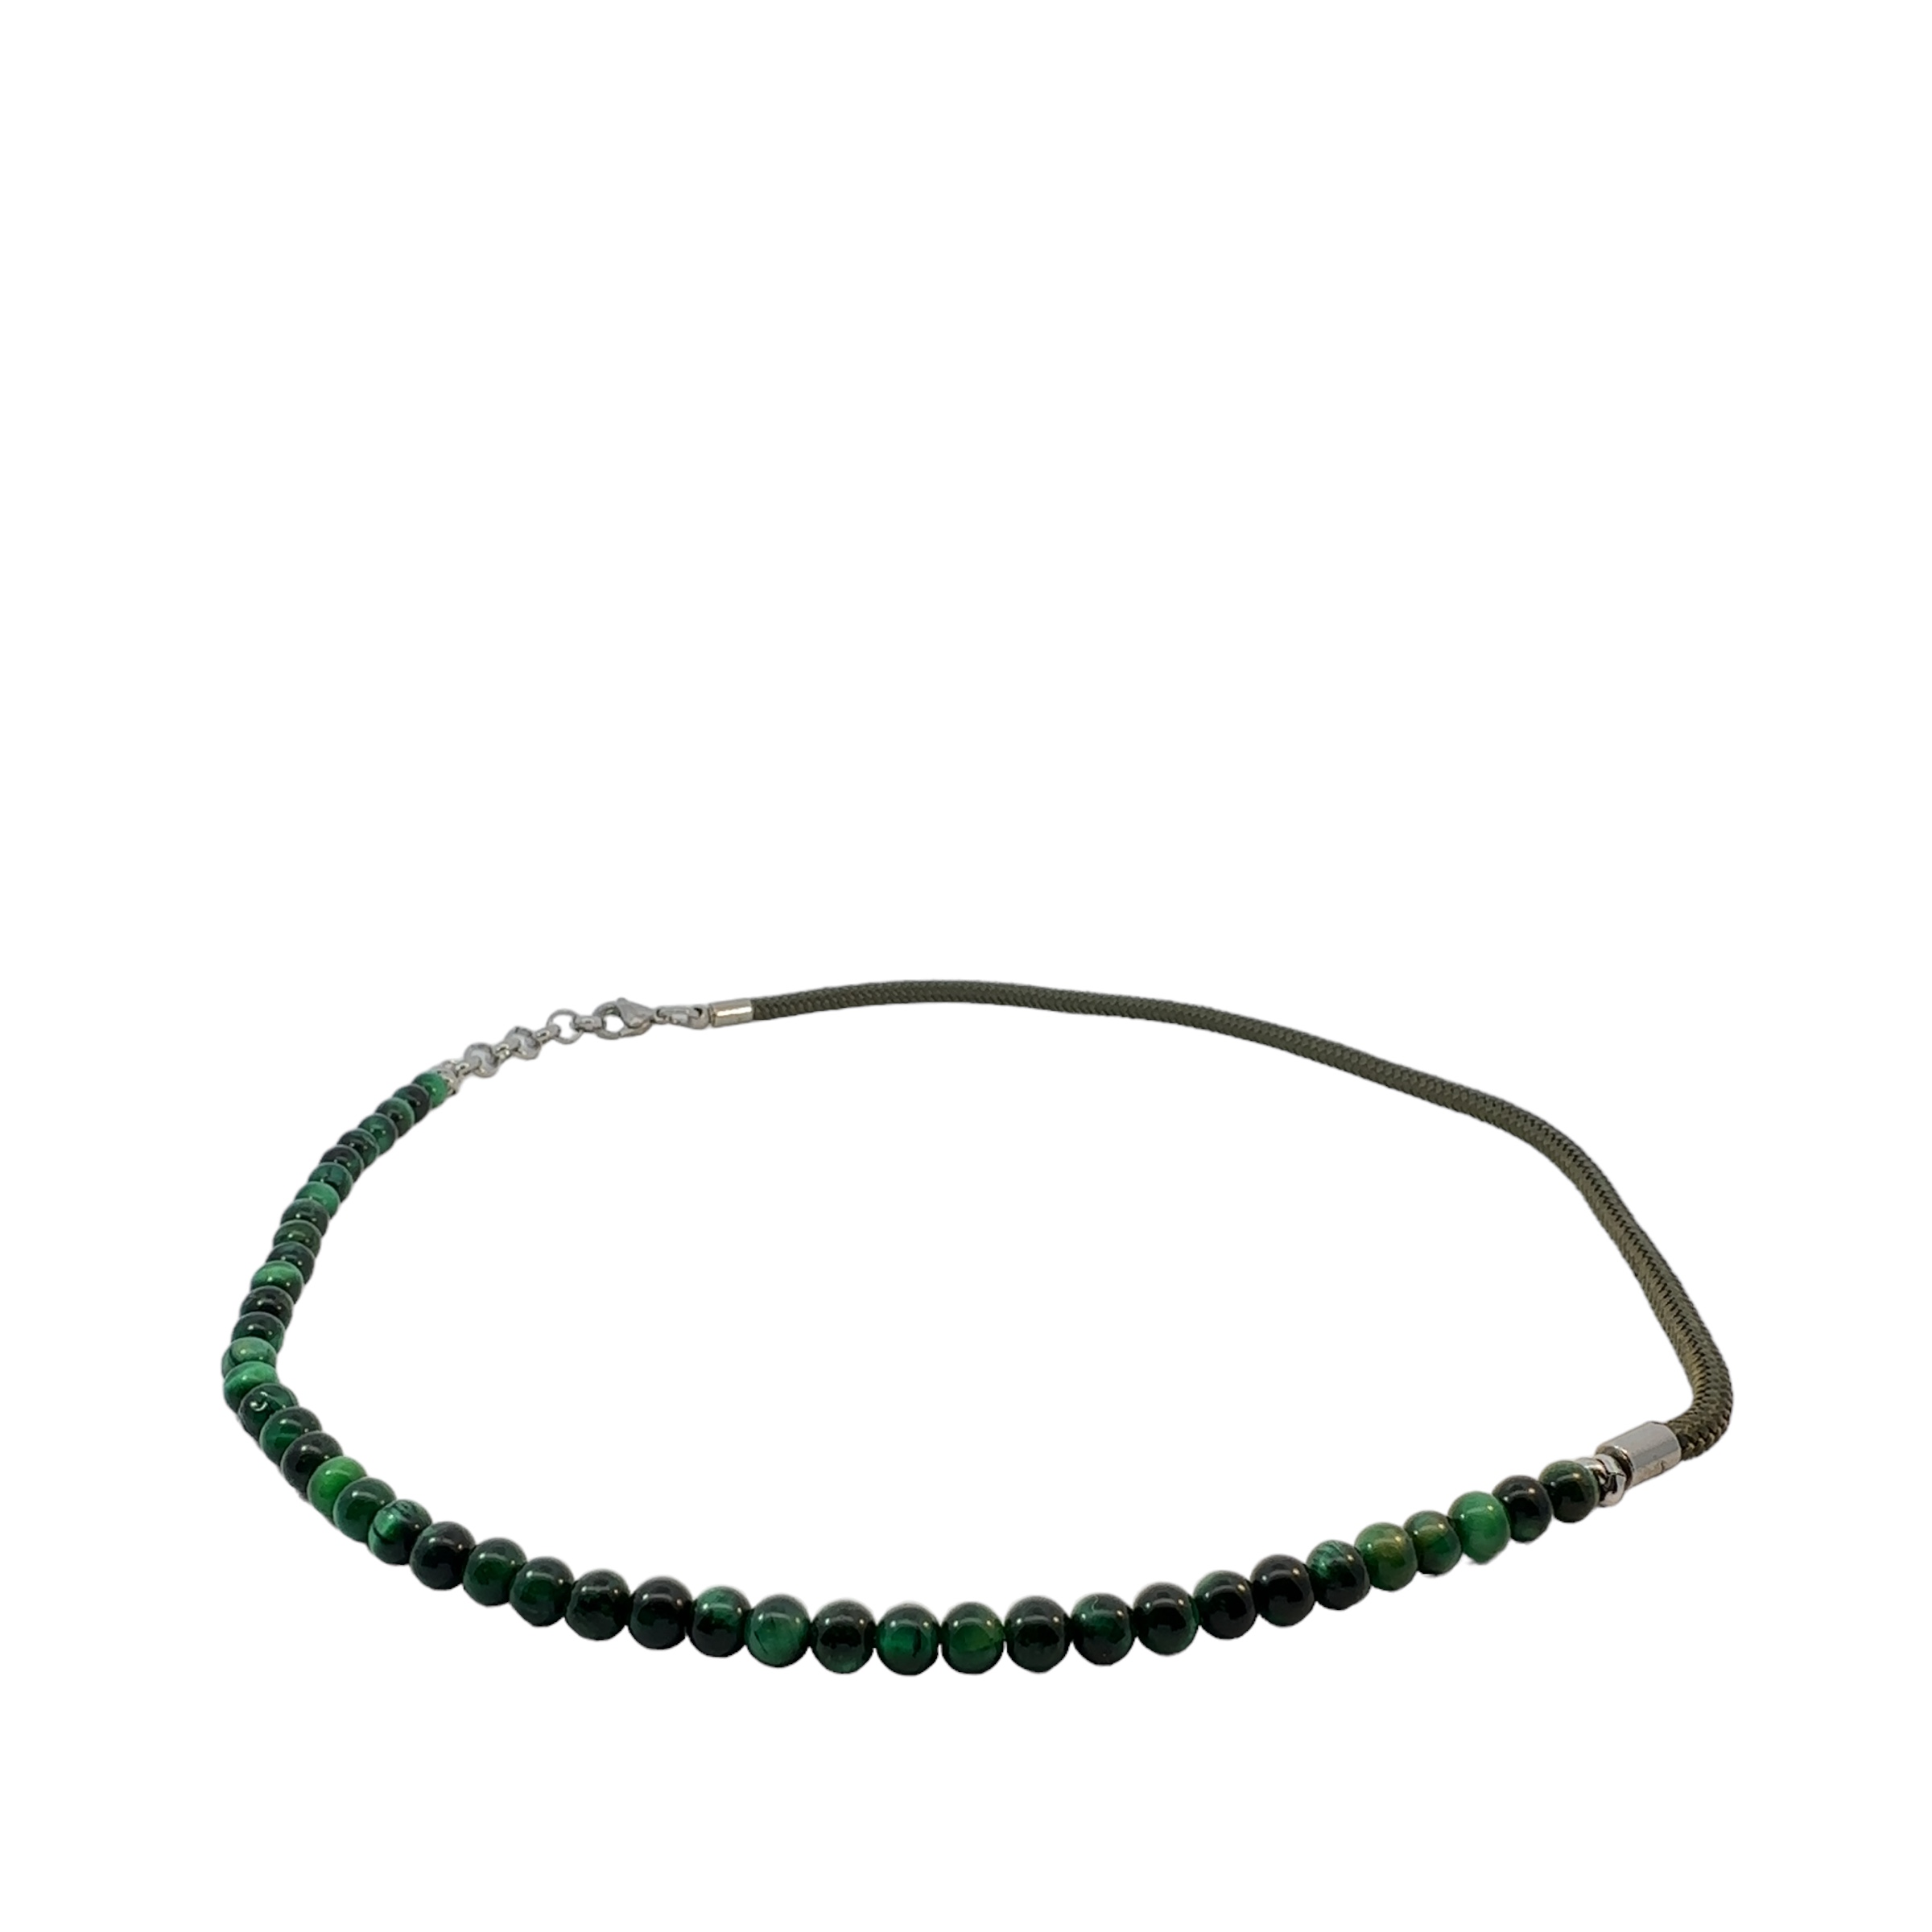 Swärd herre halskæde grøn, stål, sten, nylon - Swärd-14398